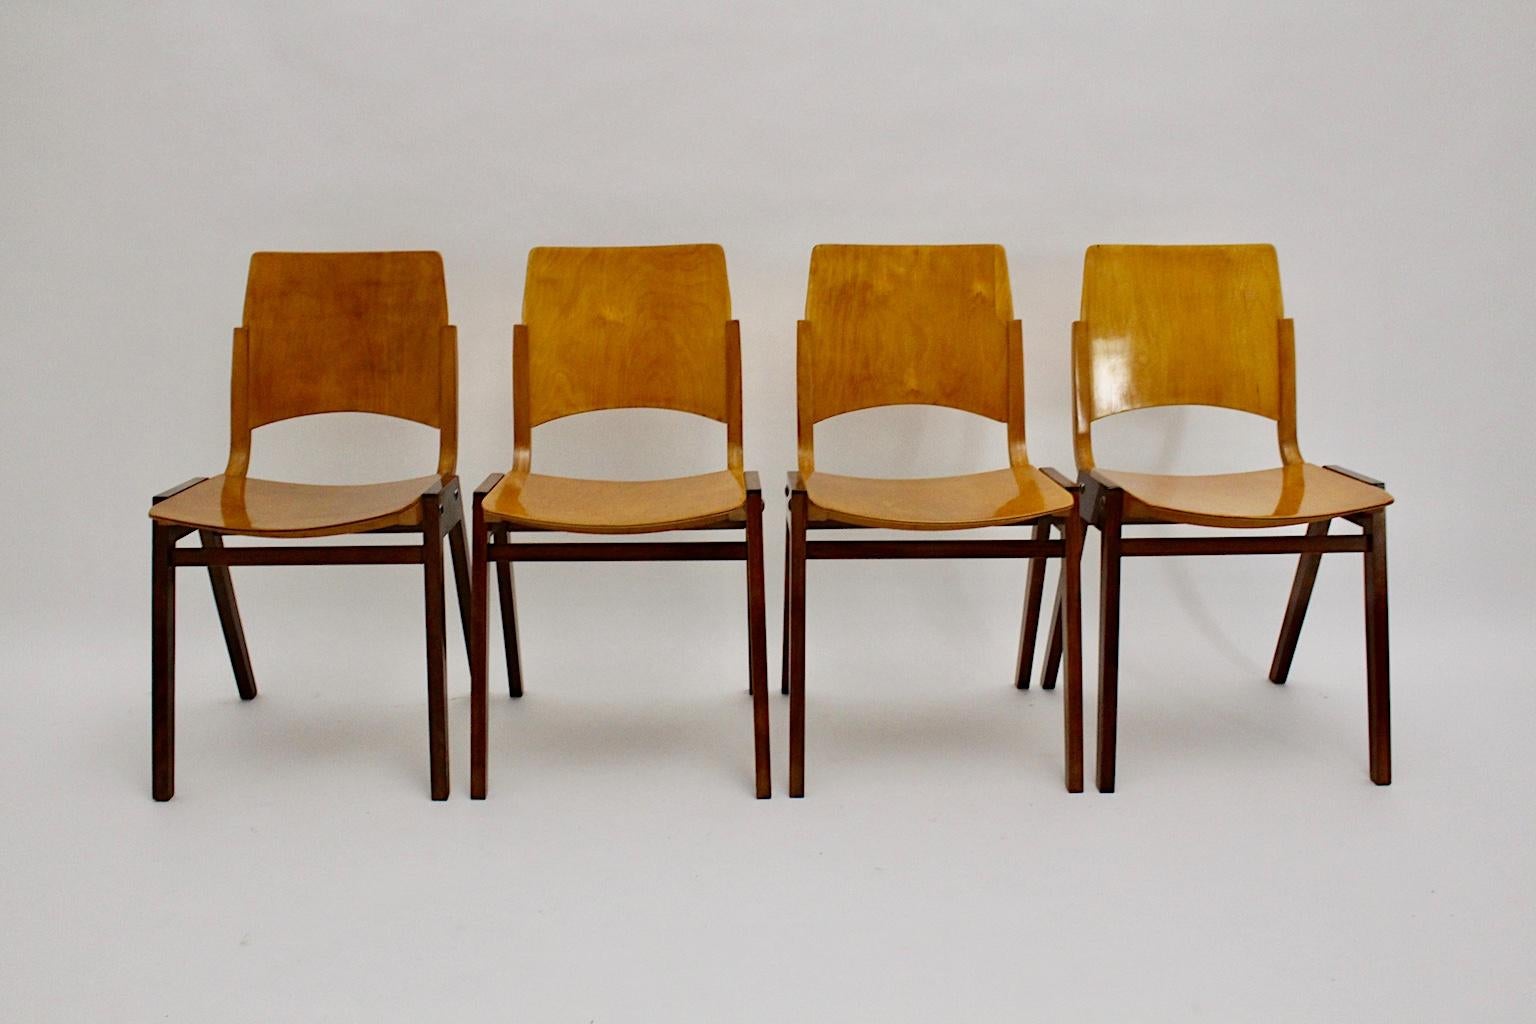 Ensemble de quatre chaises de salle à manger bicolores, conçu par Roland Rainer et exécuté par Emil & Alfred Pollak, Vienne.
Les chaises de salle à manger présentées ont été conçues pour les coulisses de l'hôtel de ville de Vienne (construit de 1953